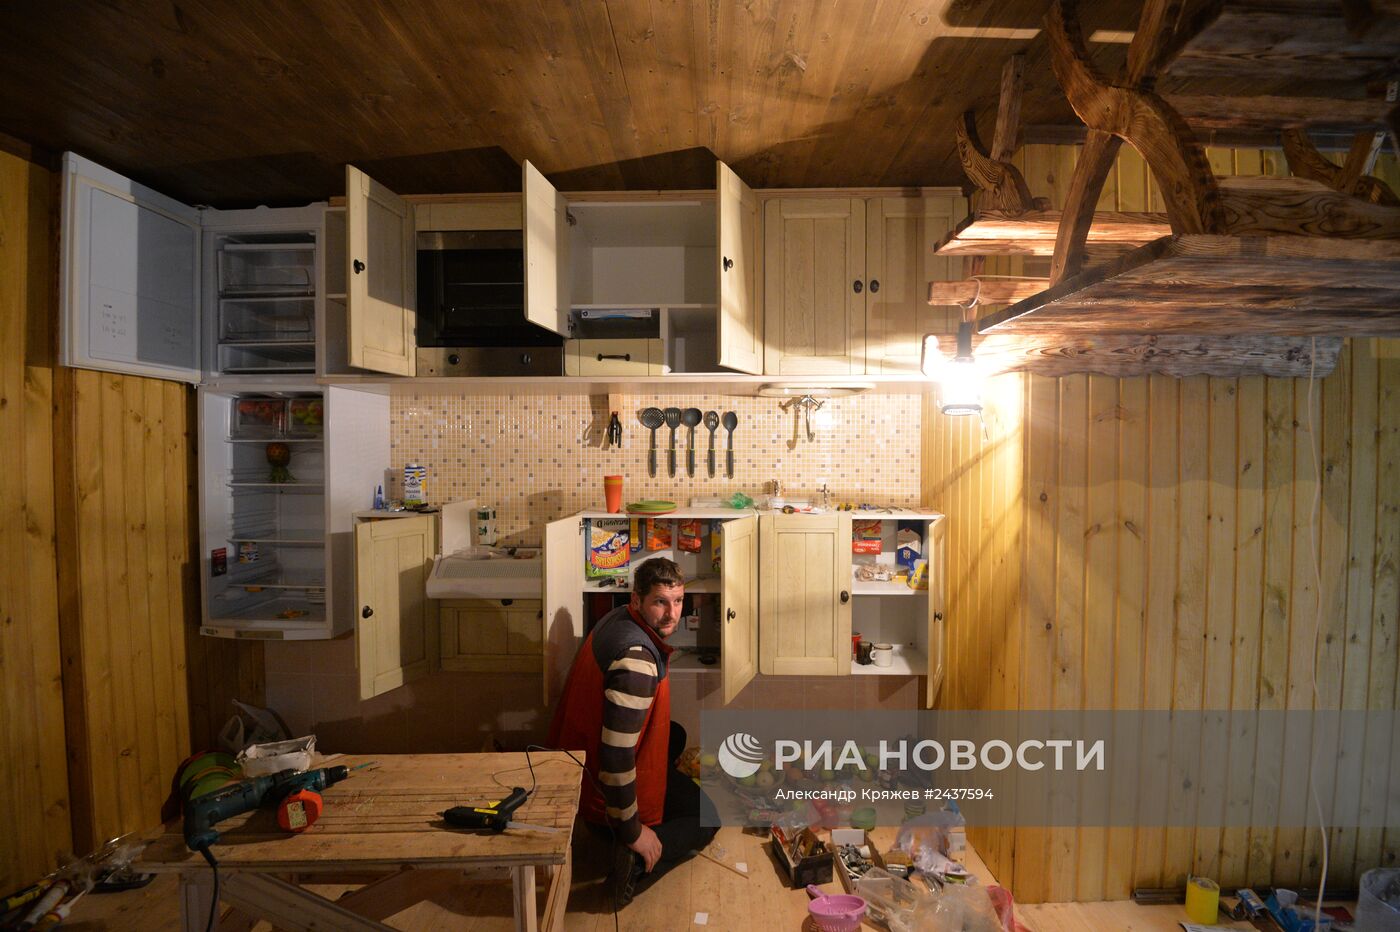 Подготовка к открытию аттракциона "Дом вверх дном" в Новосибирске